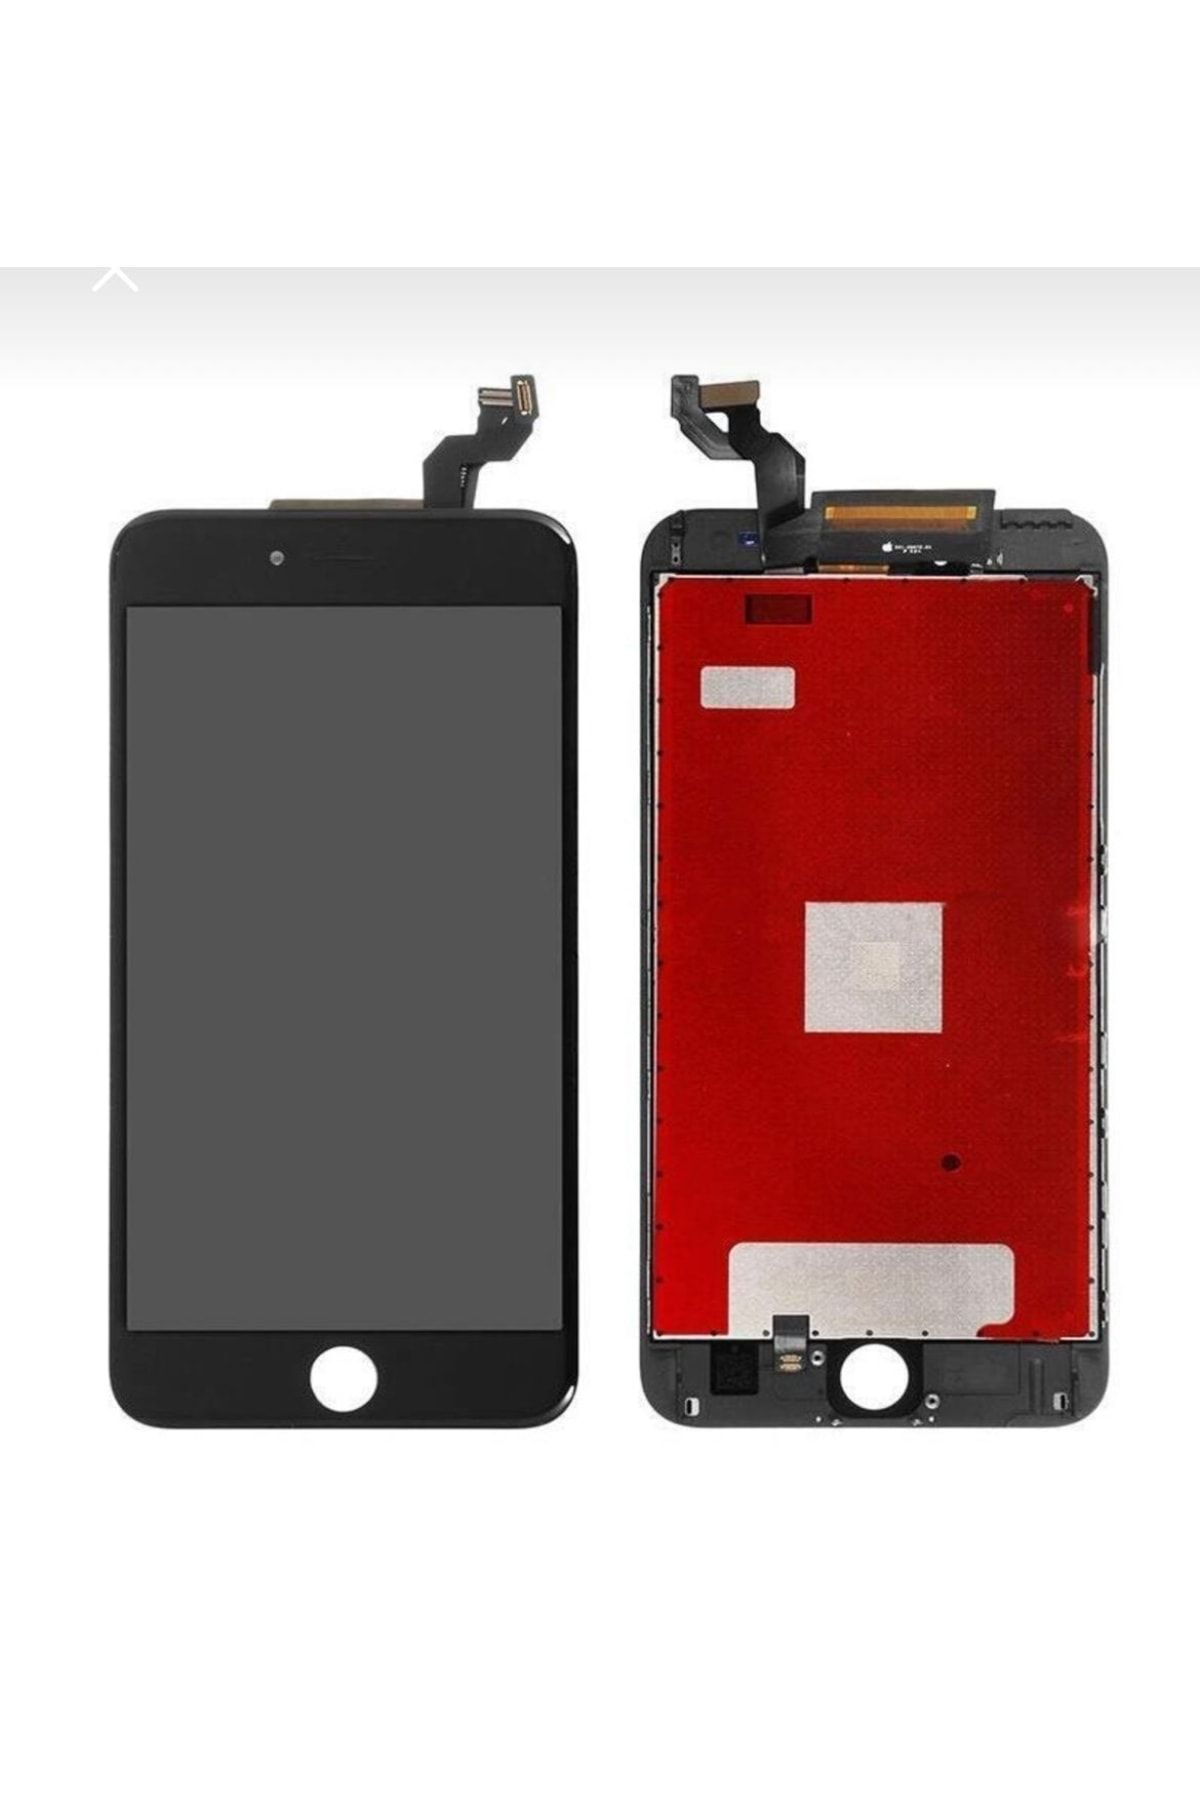 Genel Markalar Iphone 6s Plus Uyumlu Lcd Ekran Dokunmatık Or Siyah